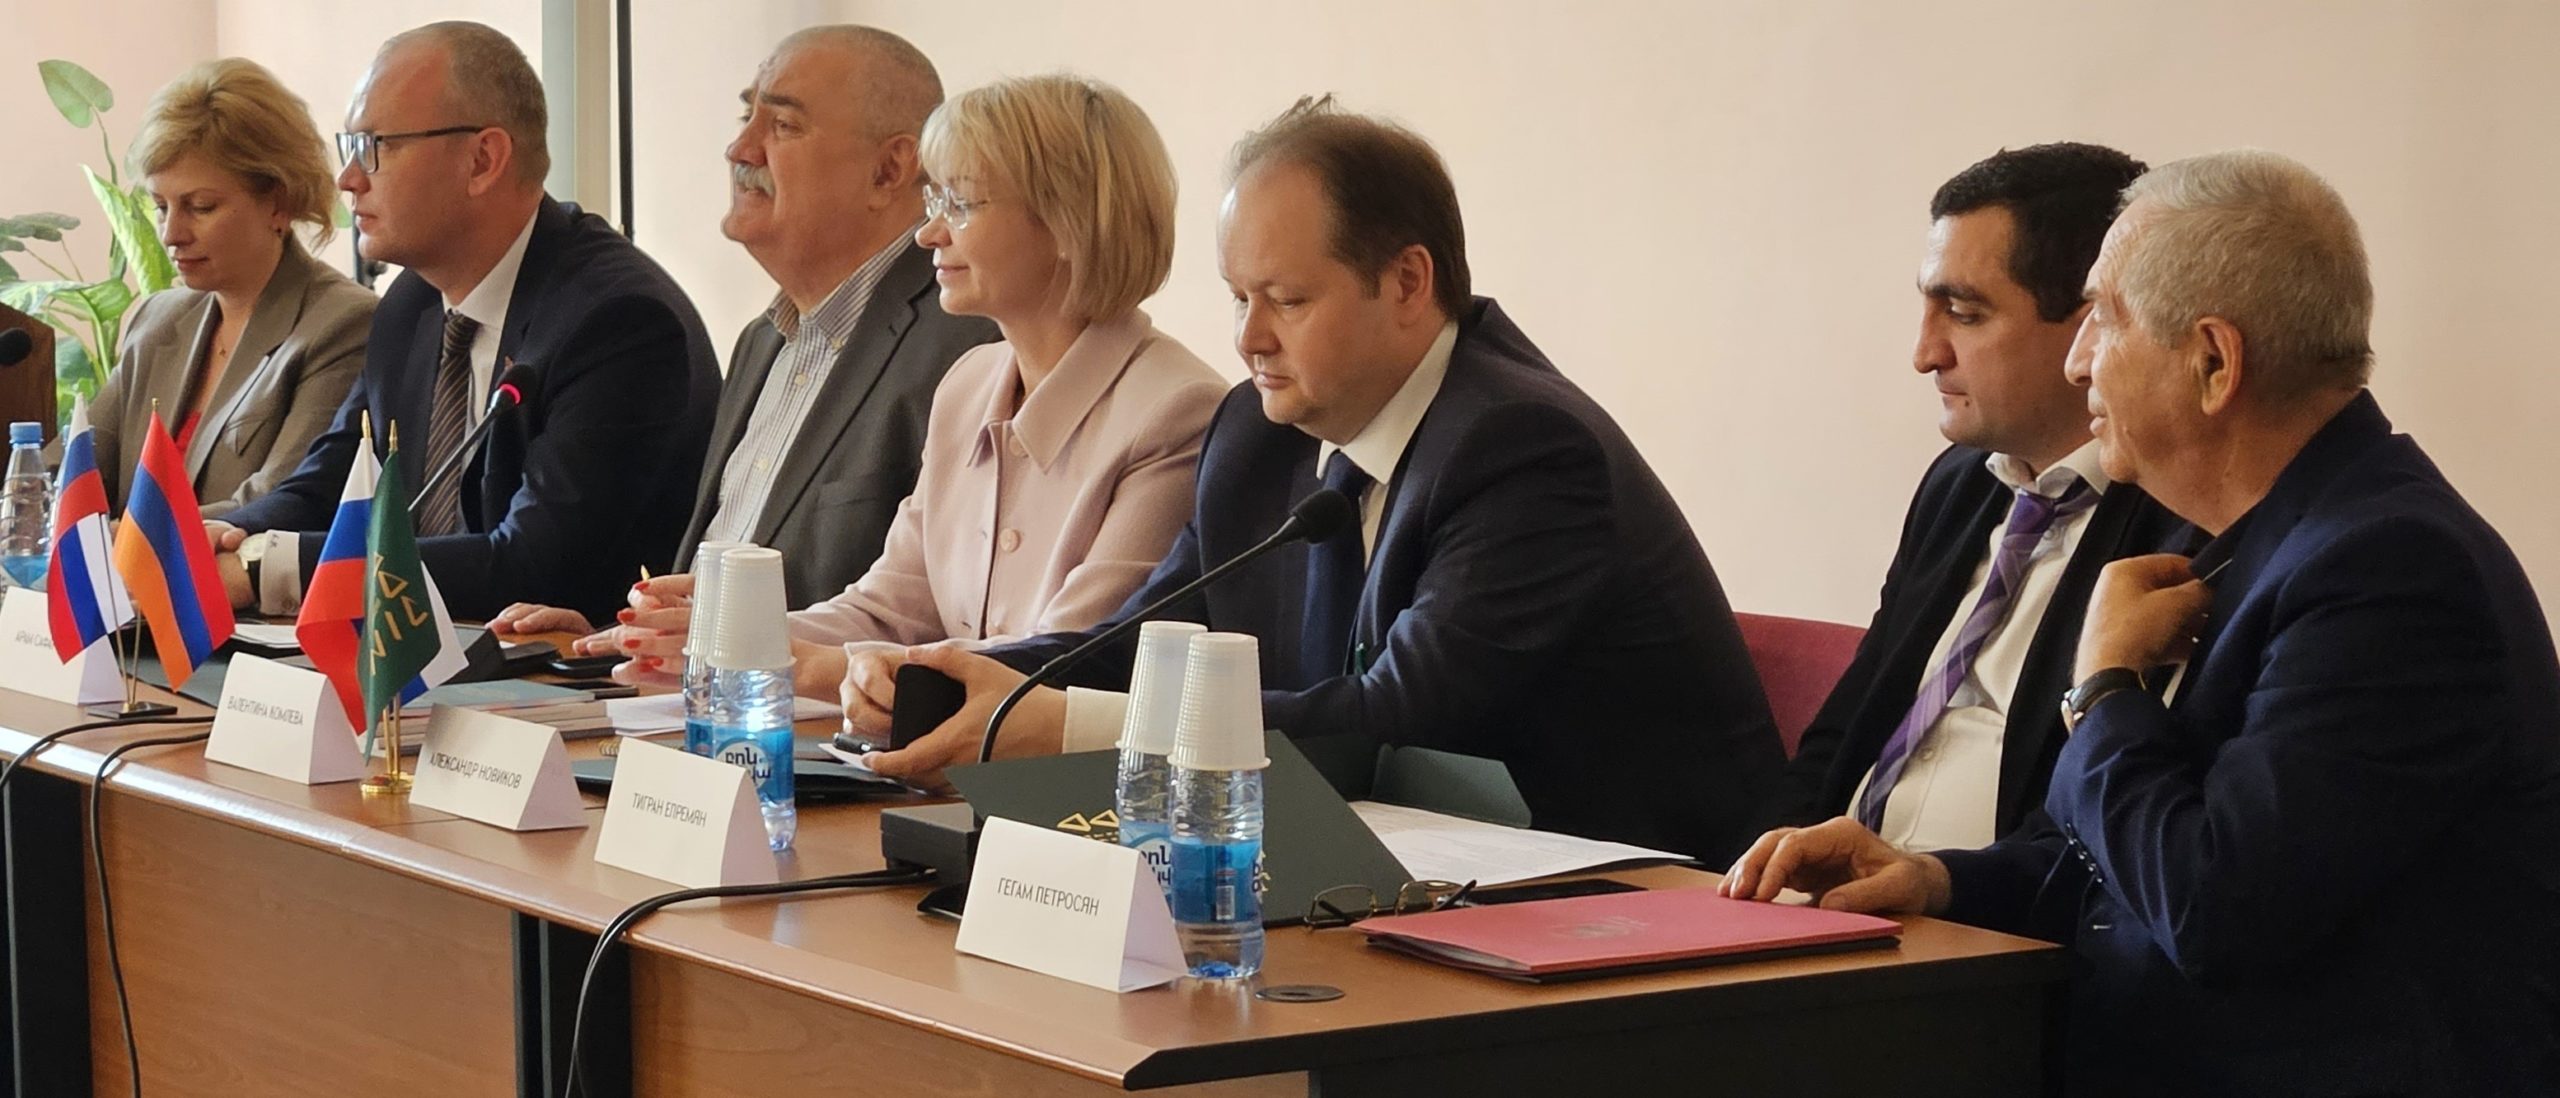 НИИРК – Начала работу региональная площадка Международной конференции НИИРК в Ереване